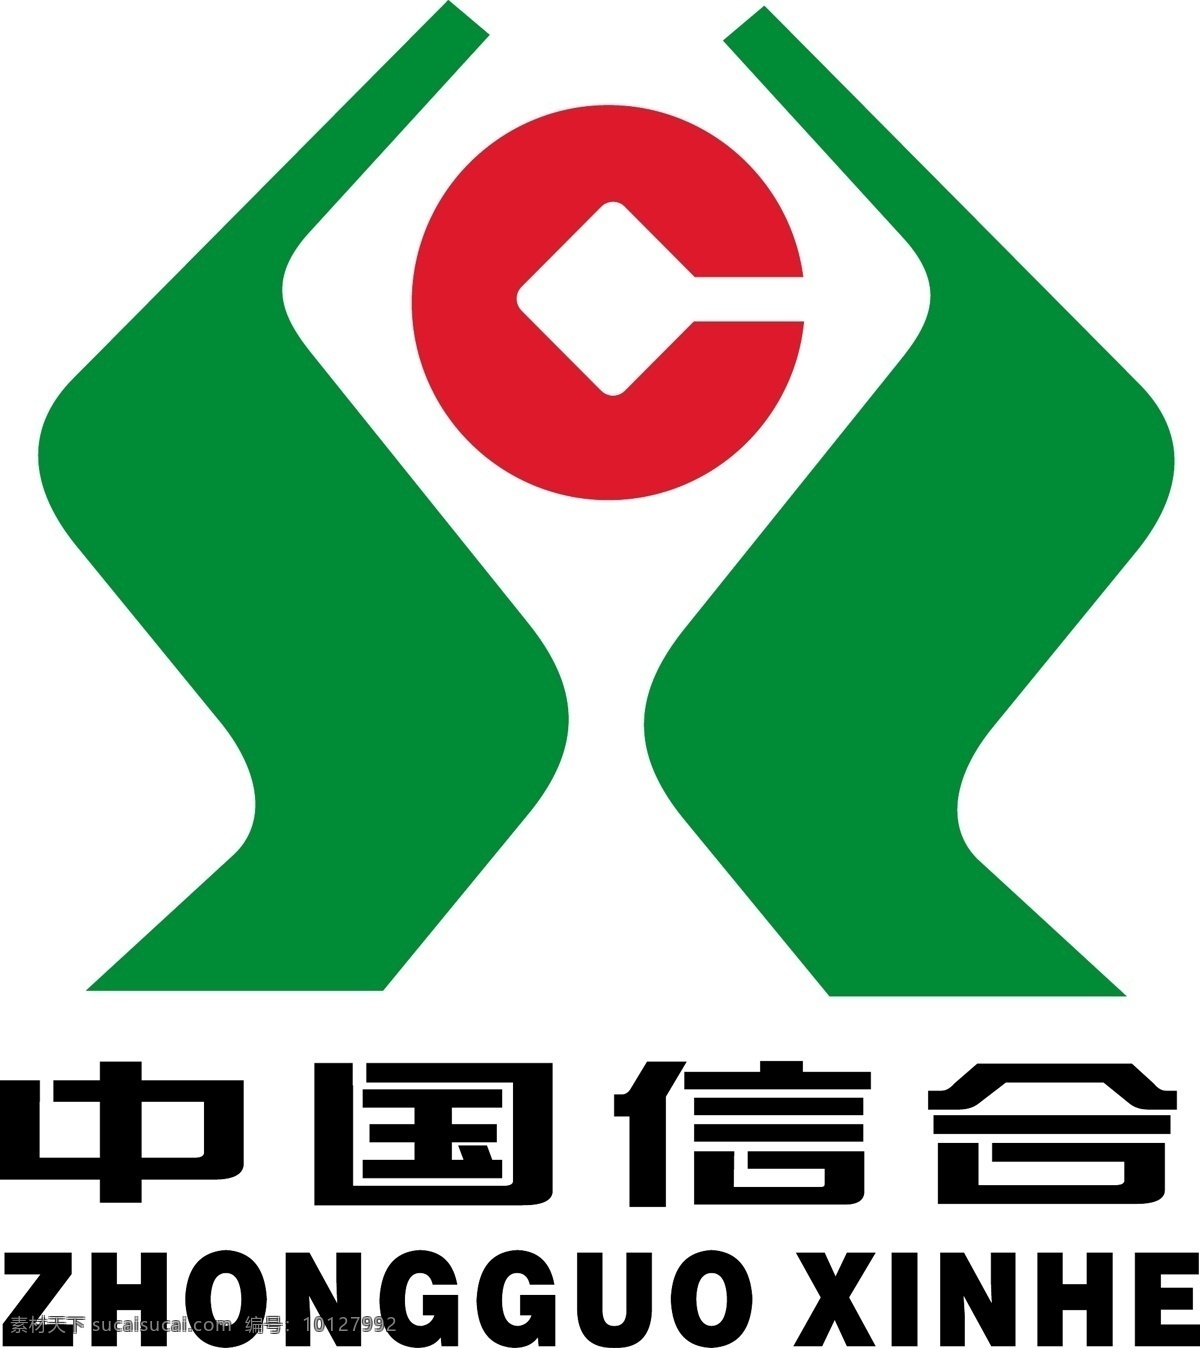 矢量 中国 信 合 标志 非常 有用 企业 标识标志图标 logo 中国信合标志 矢量图库